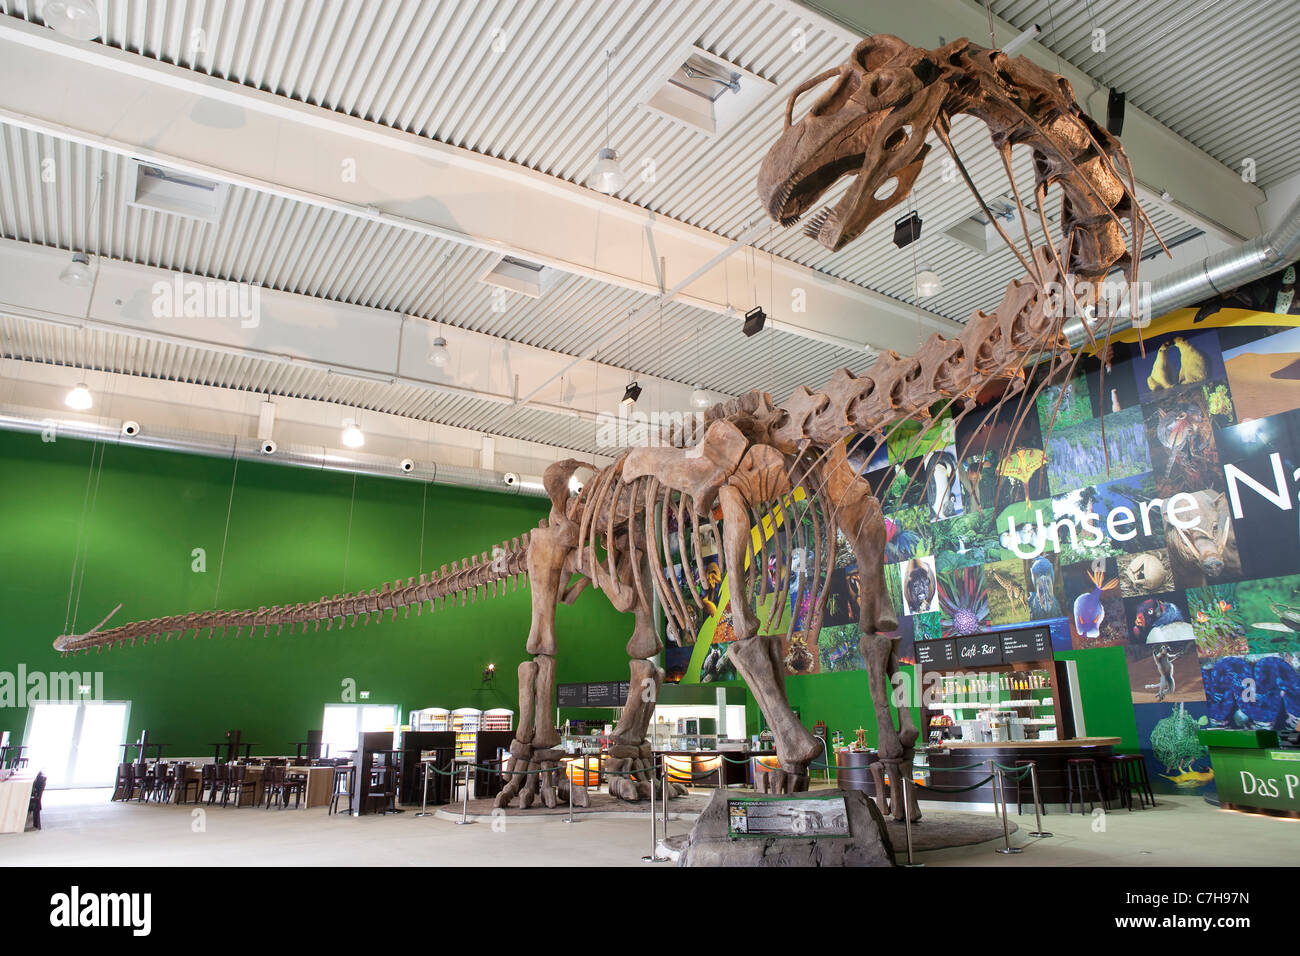 Alemania Sarre Schiffweiler.Praehistorium Gondwana, Museo de Praehistoric veces. Argentinosaurus en el vestíbulo de la entrada principal Foto de stock